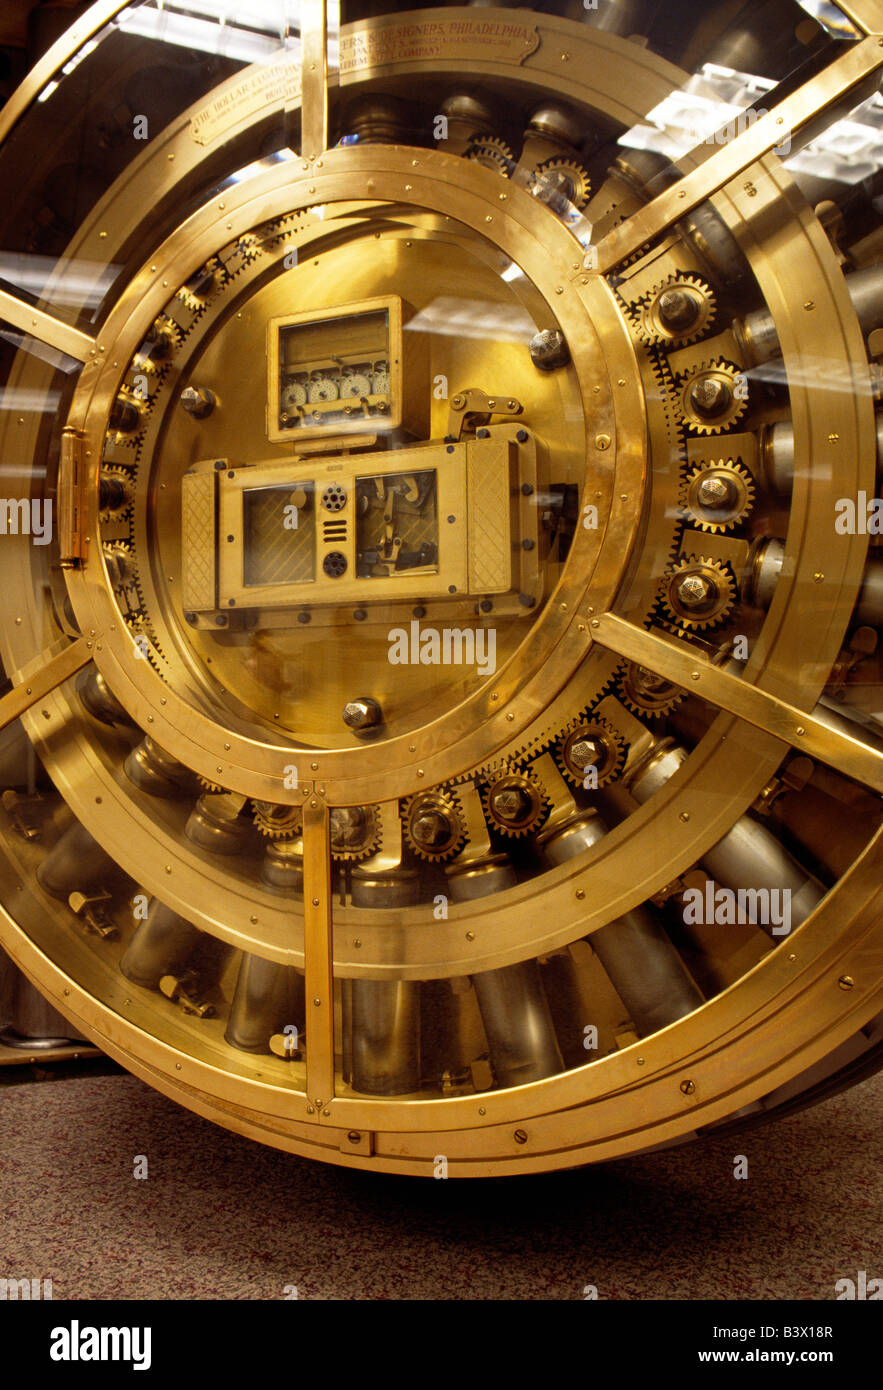 Bank vault door Stock Photo